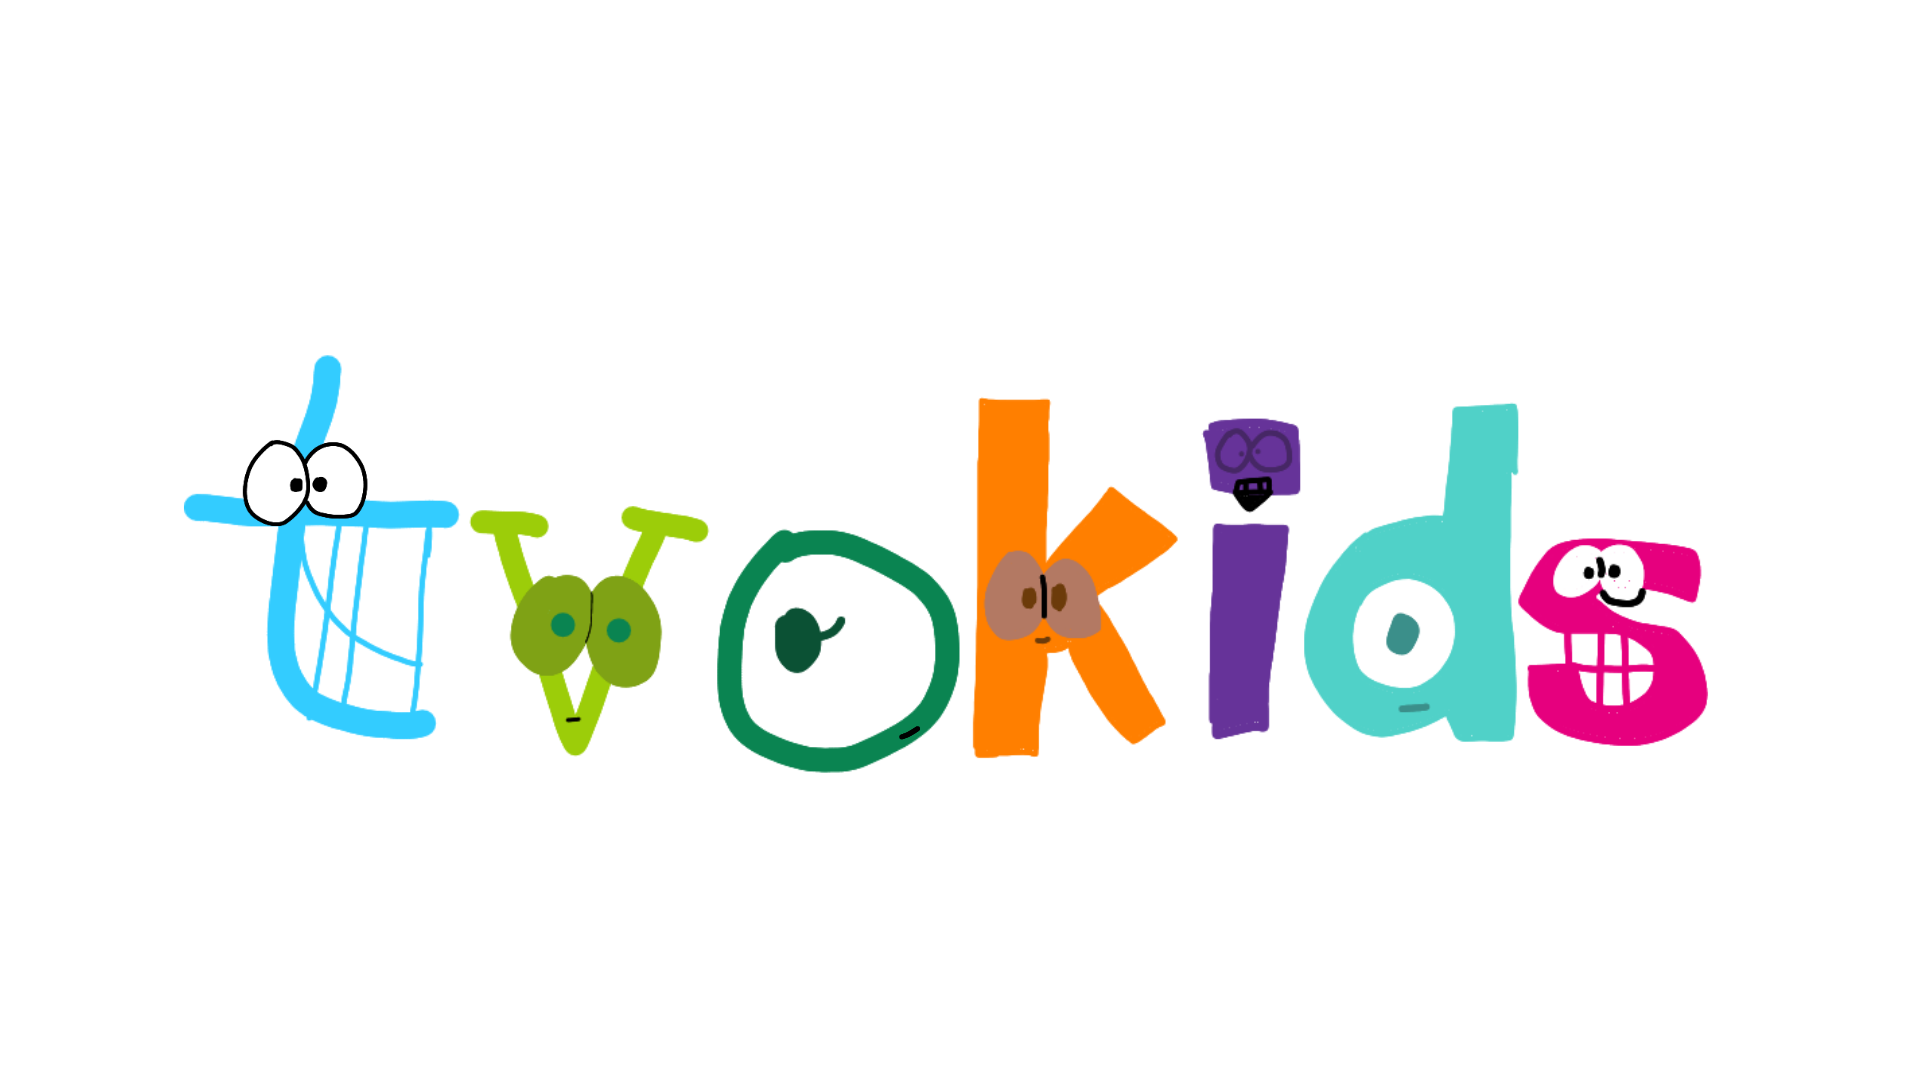 TVOKids Logo (TVOKids Alphabet Lore Style) by TheBobby65 on DeviantArt